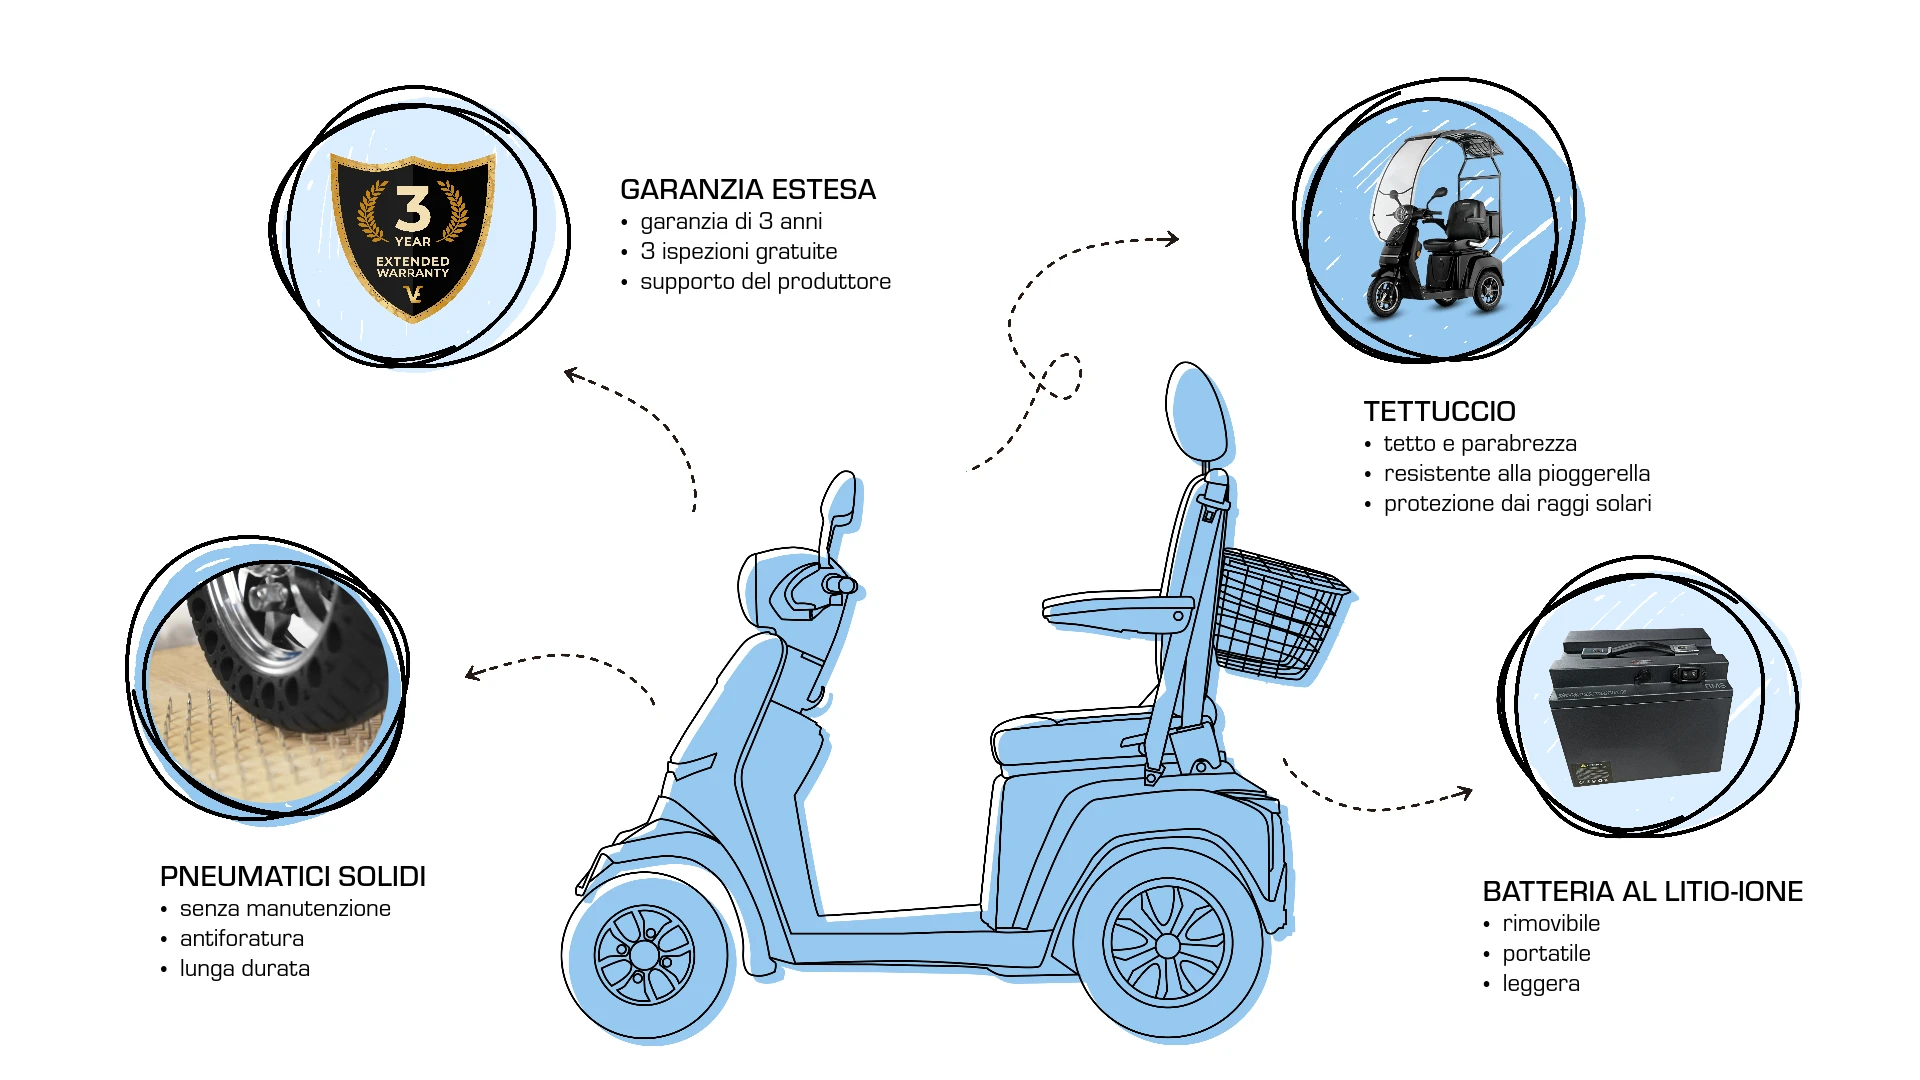 Veleco GRAVIS con sedile del capitano extra, aggiornamenti, pneumatici solidi per scooter di mobilità, estensione della garanzia, batteria agli ioni di litio